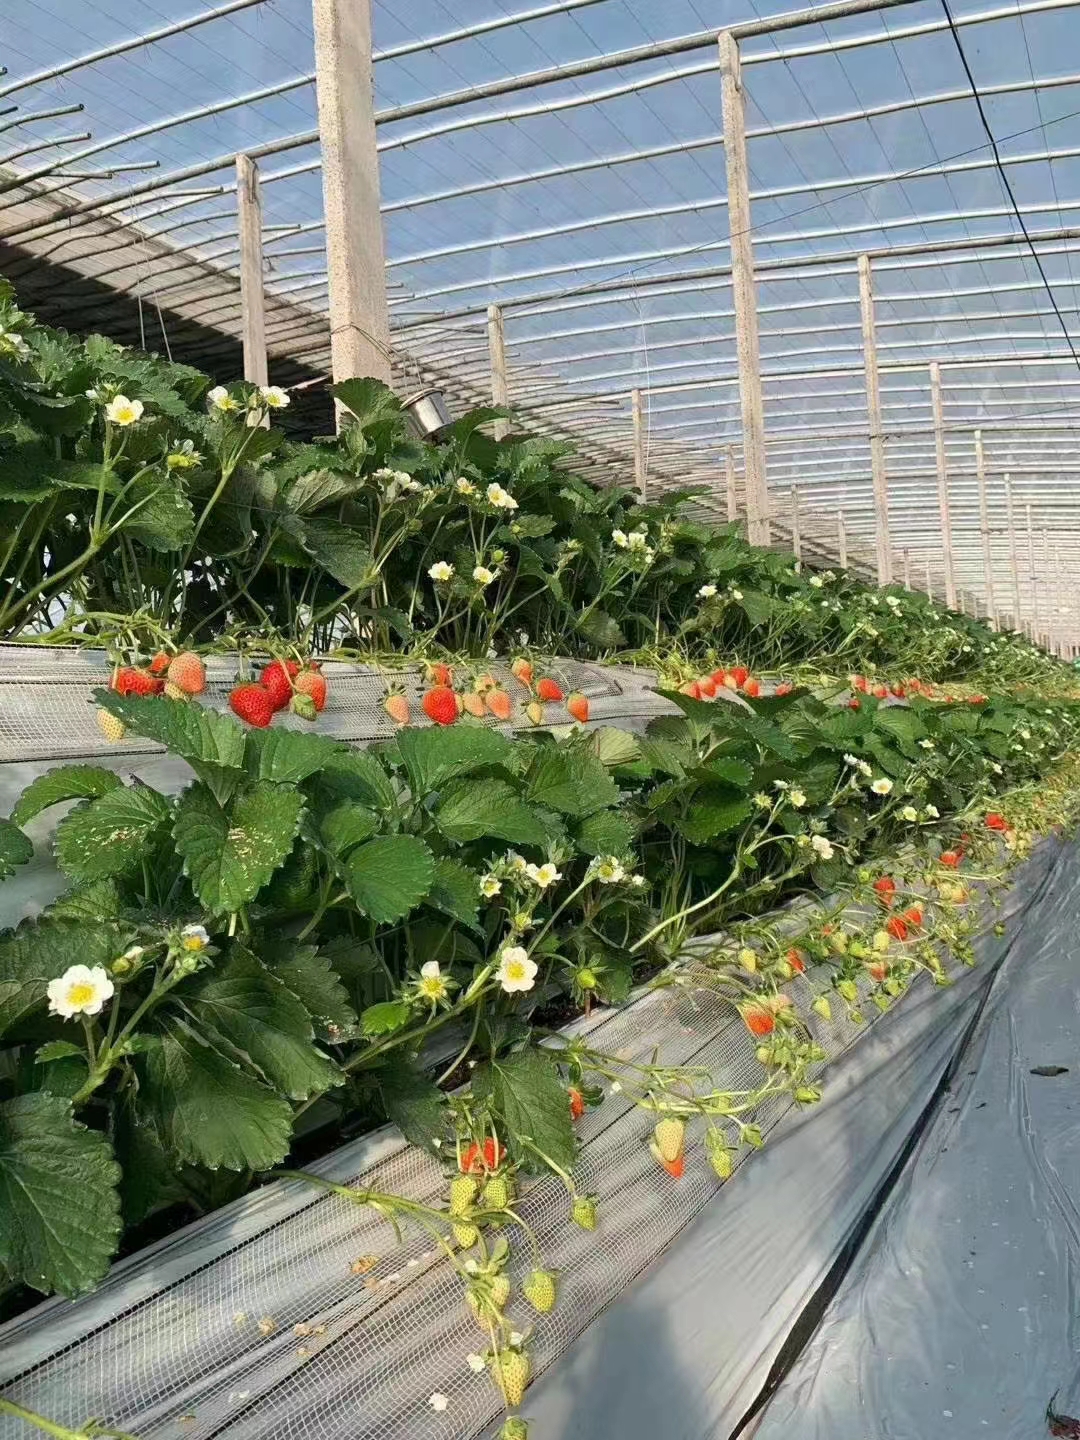 第五十九期中荷无土栽培有机蔬菜及高架草莓沙培番茄技术培训通知4月24-28山东